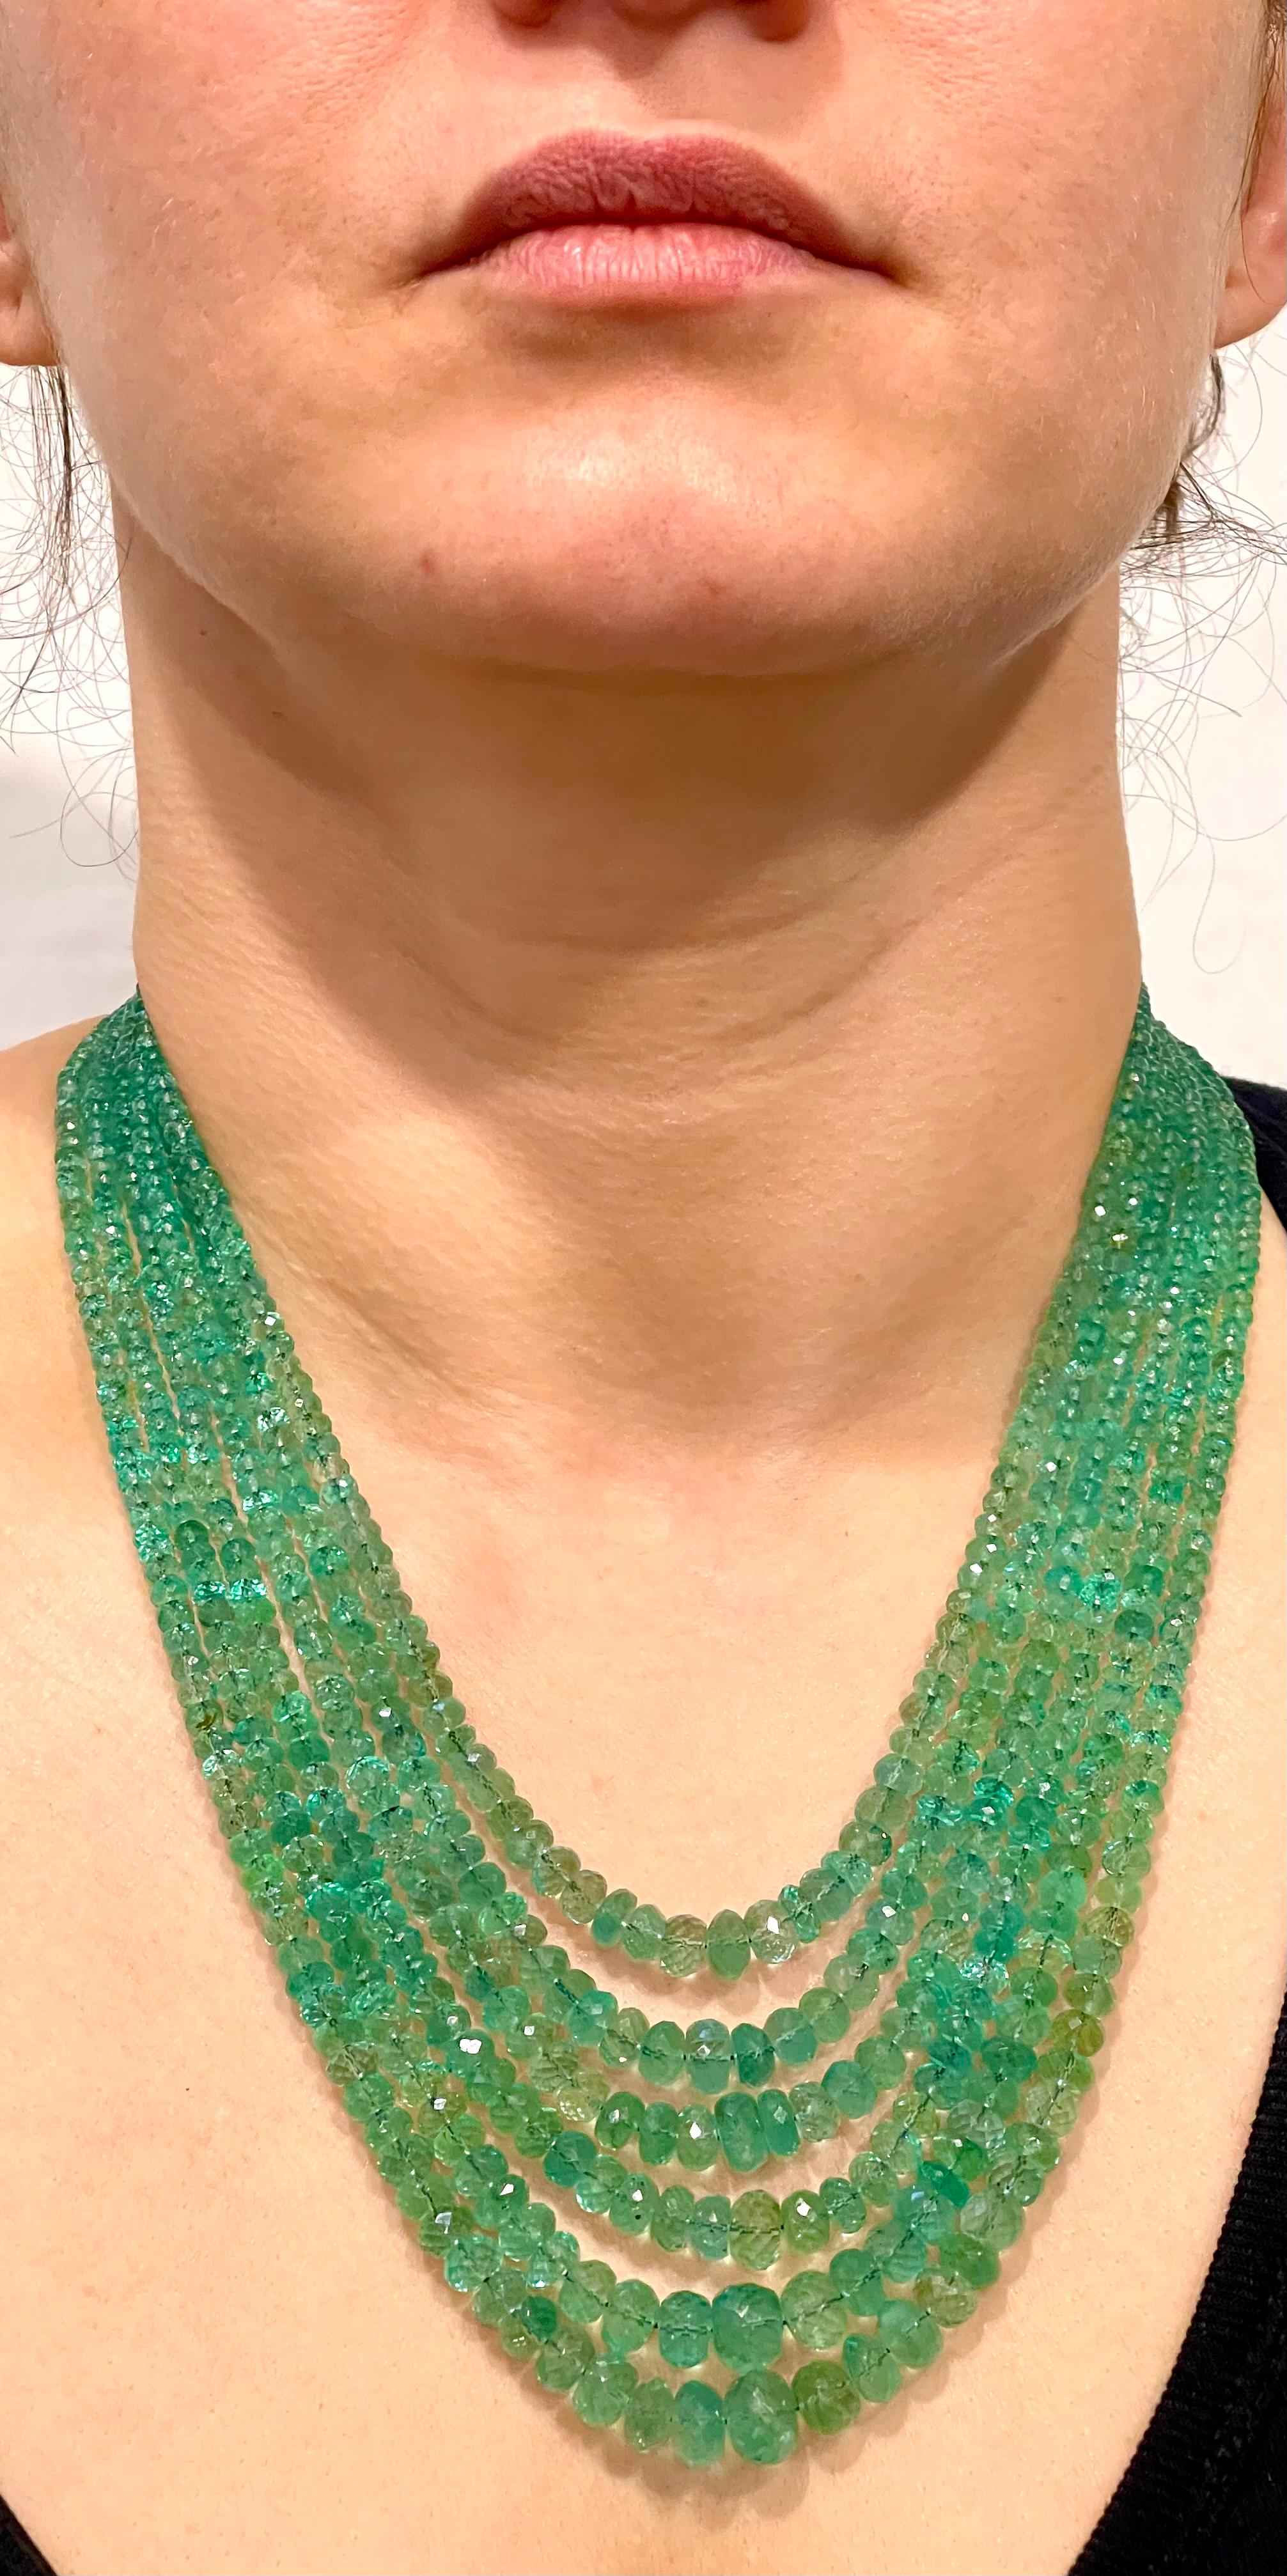 200 carats of emerald